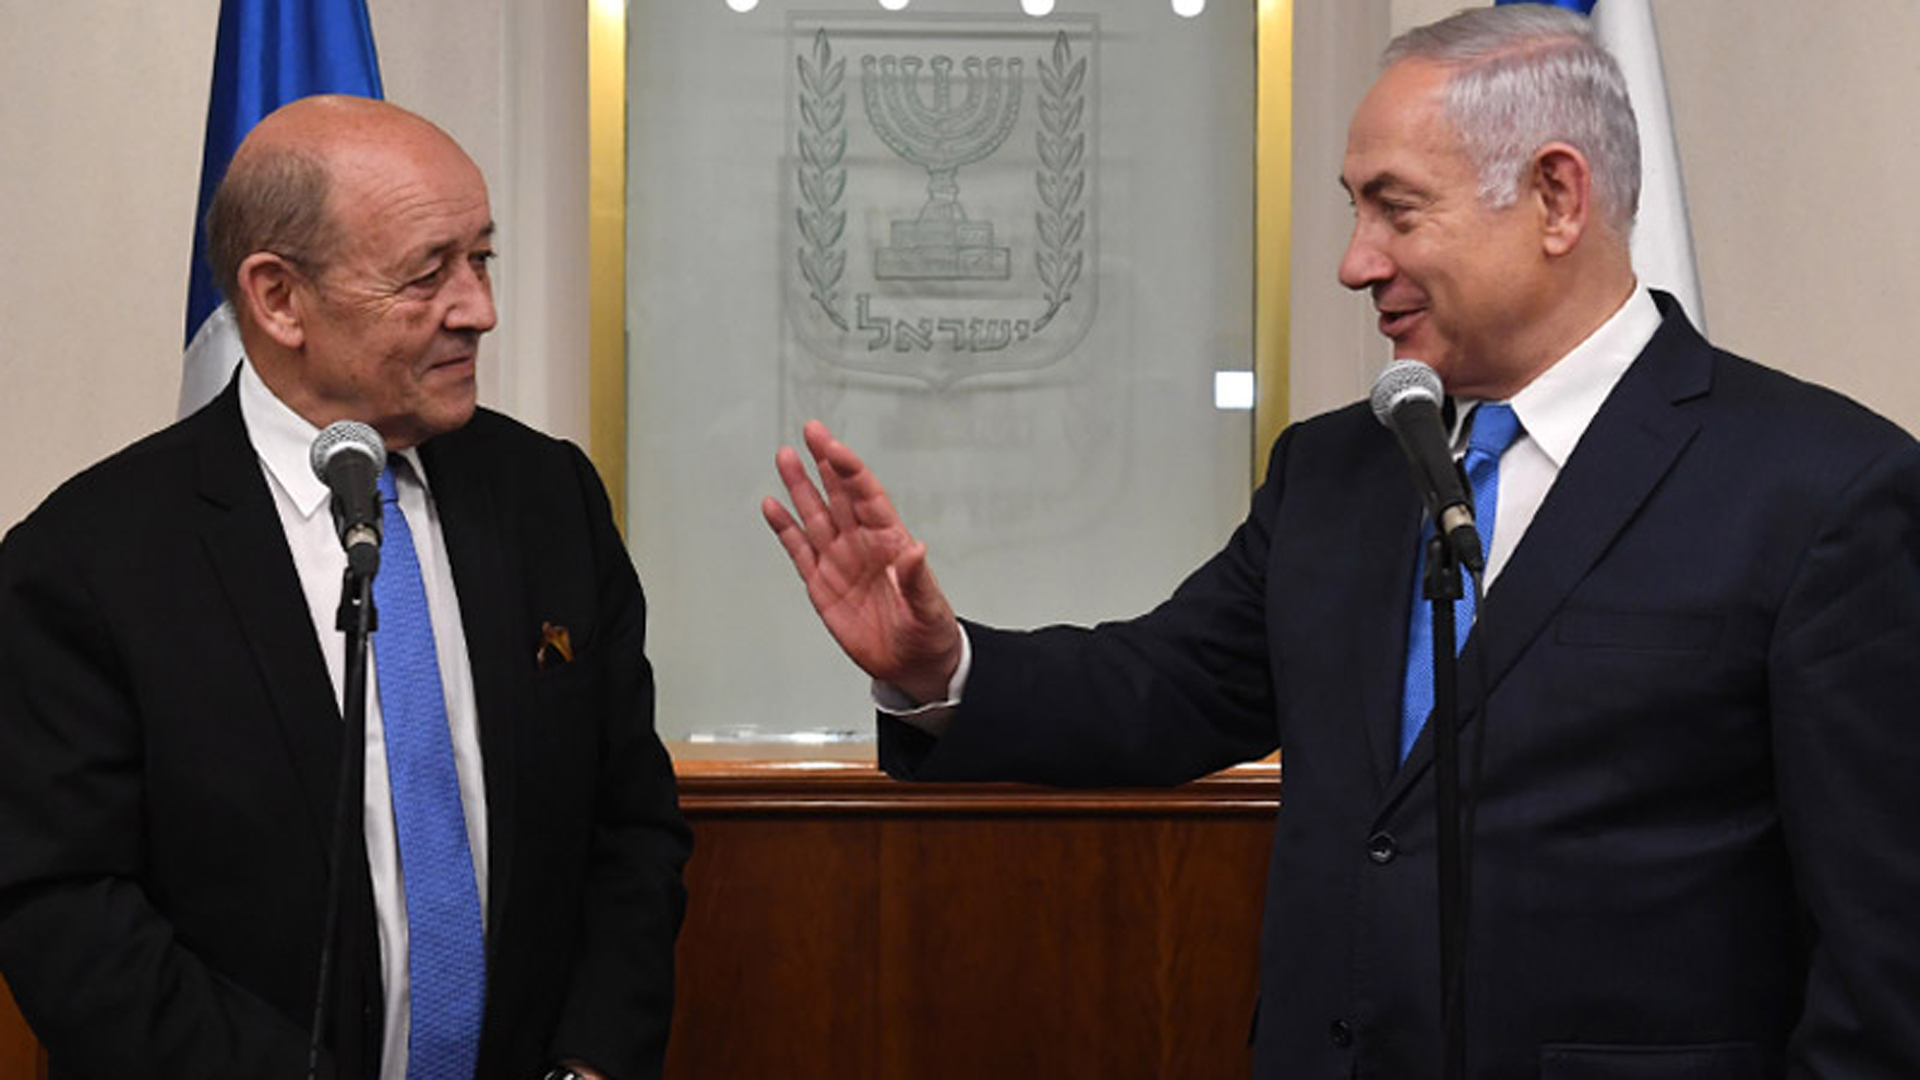 Le Drian hatte am Montag den israelischen Premier und Außenminister Netanjahu getroffen